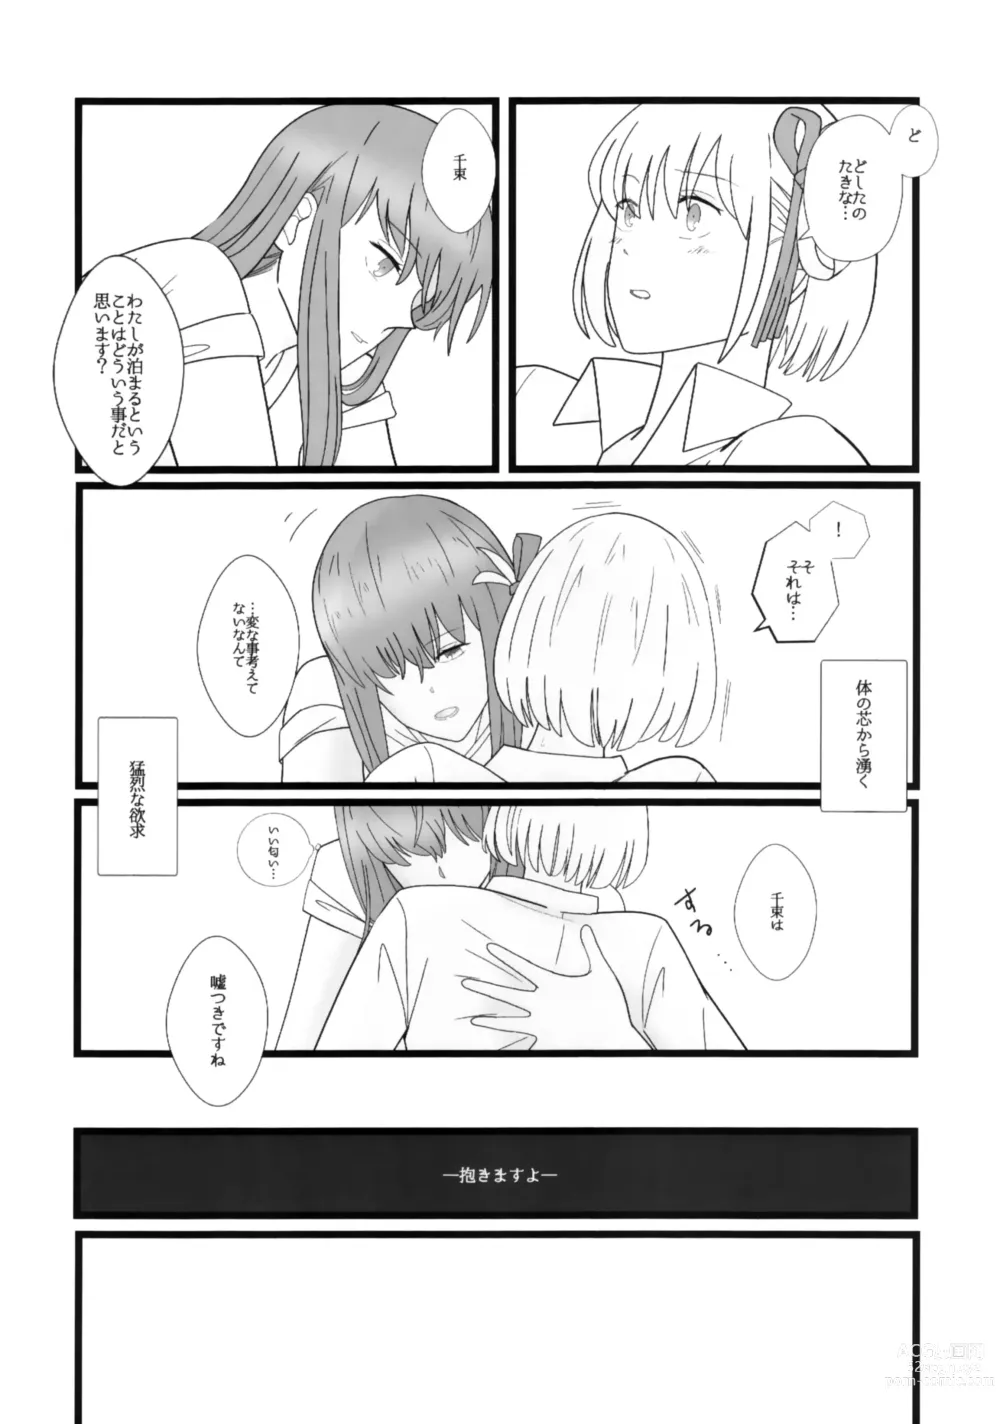 Page 18 of doujinshi Takina to Chisato.